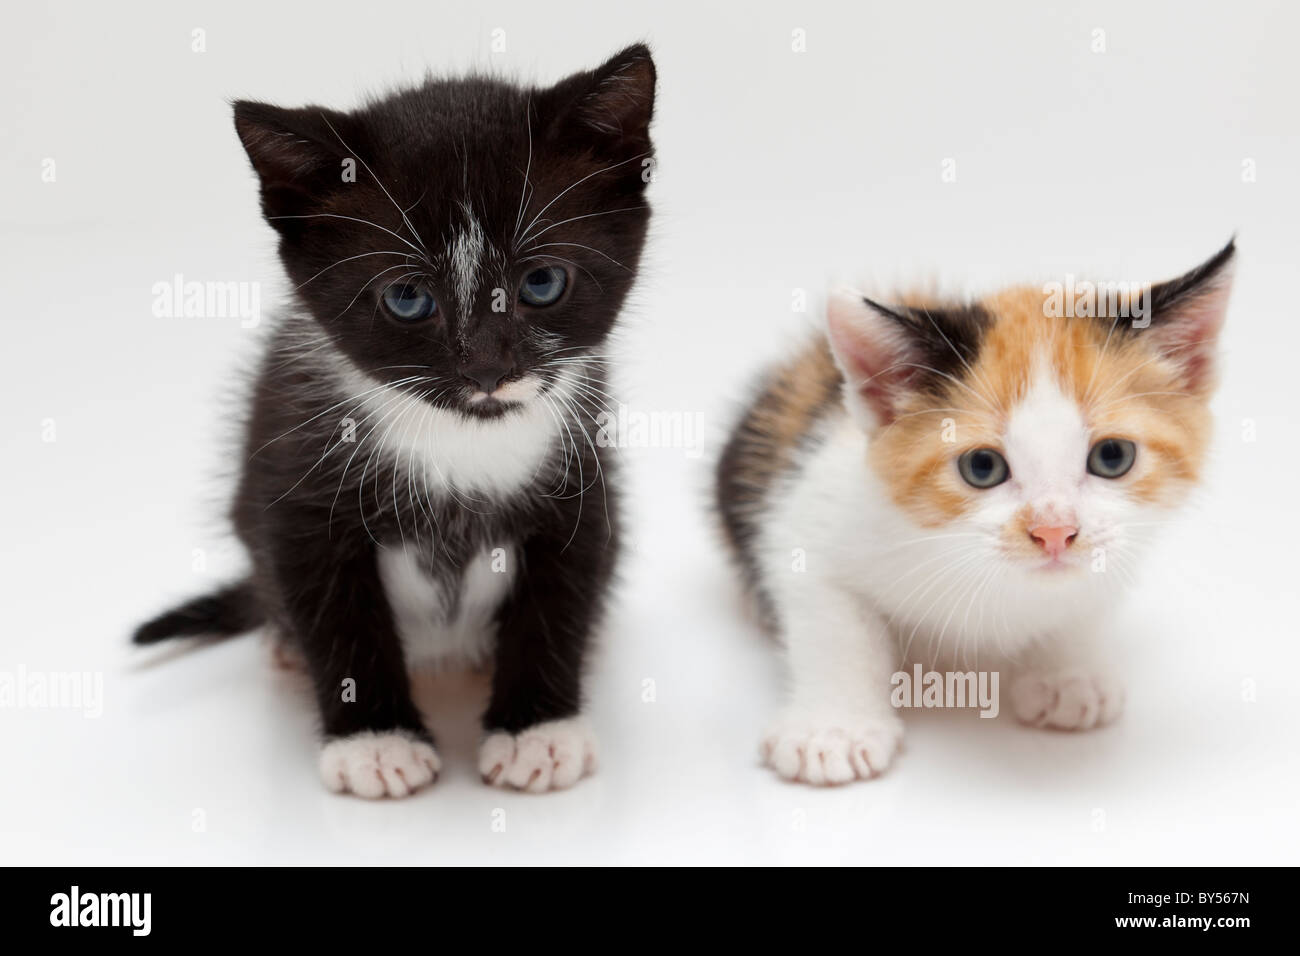 Deux petits chats sur fond blanc. Un chat est noir et une autre couleur de liège Banque D'Images